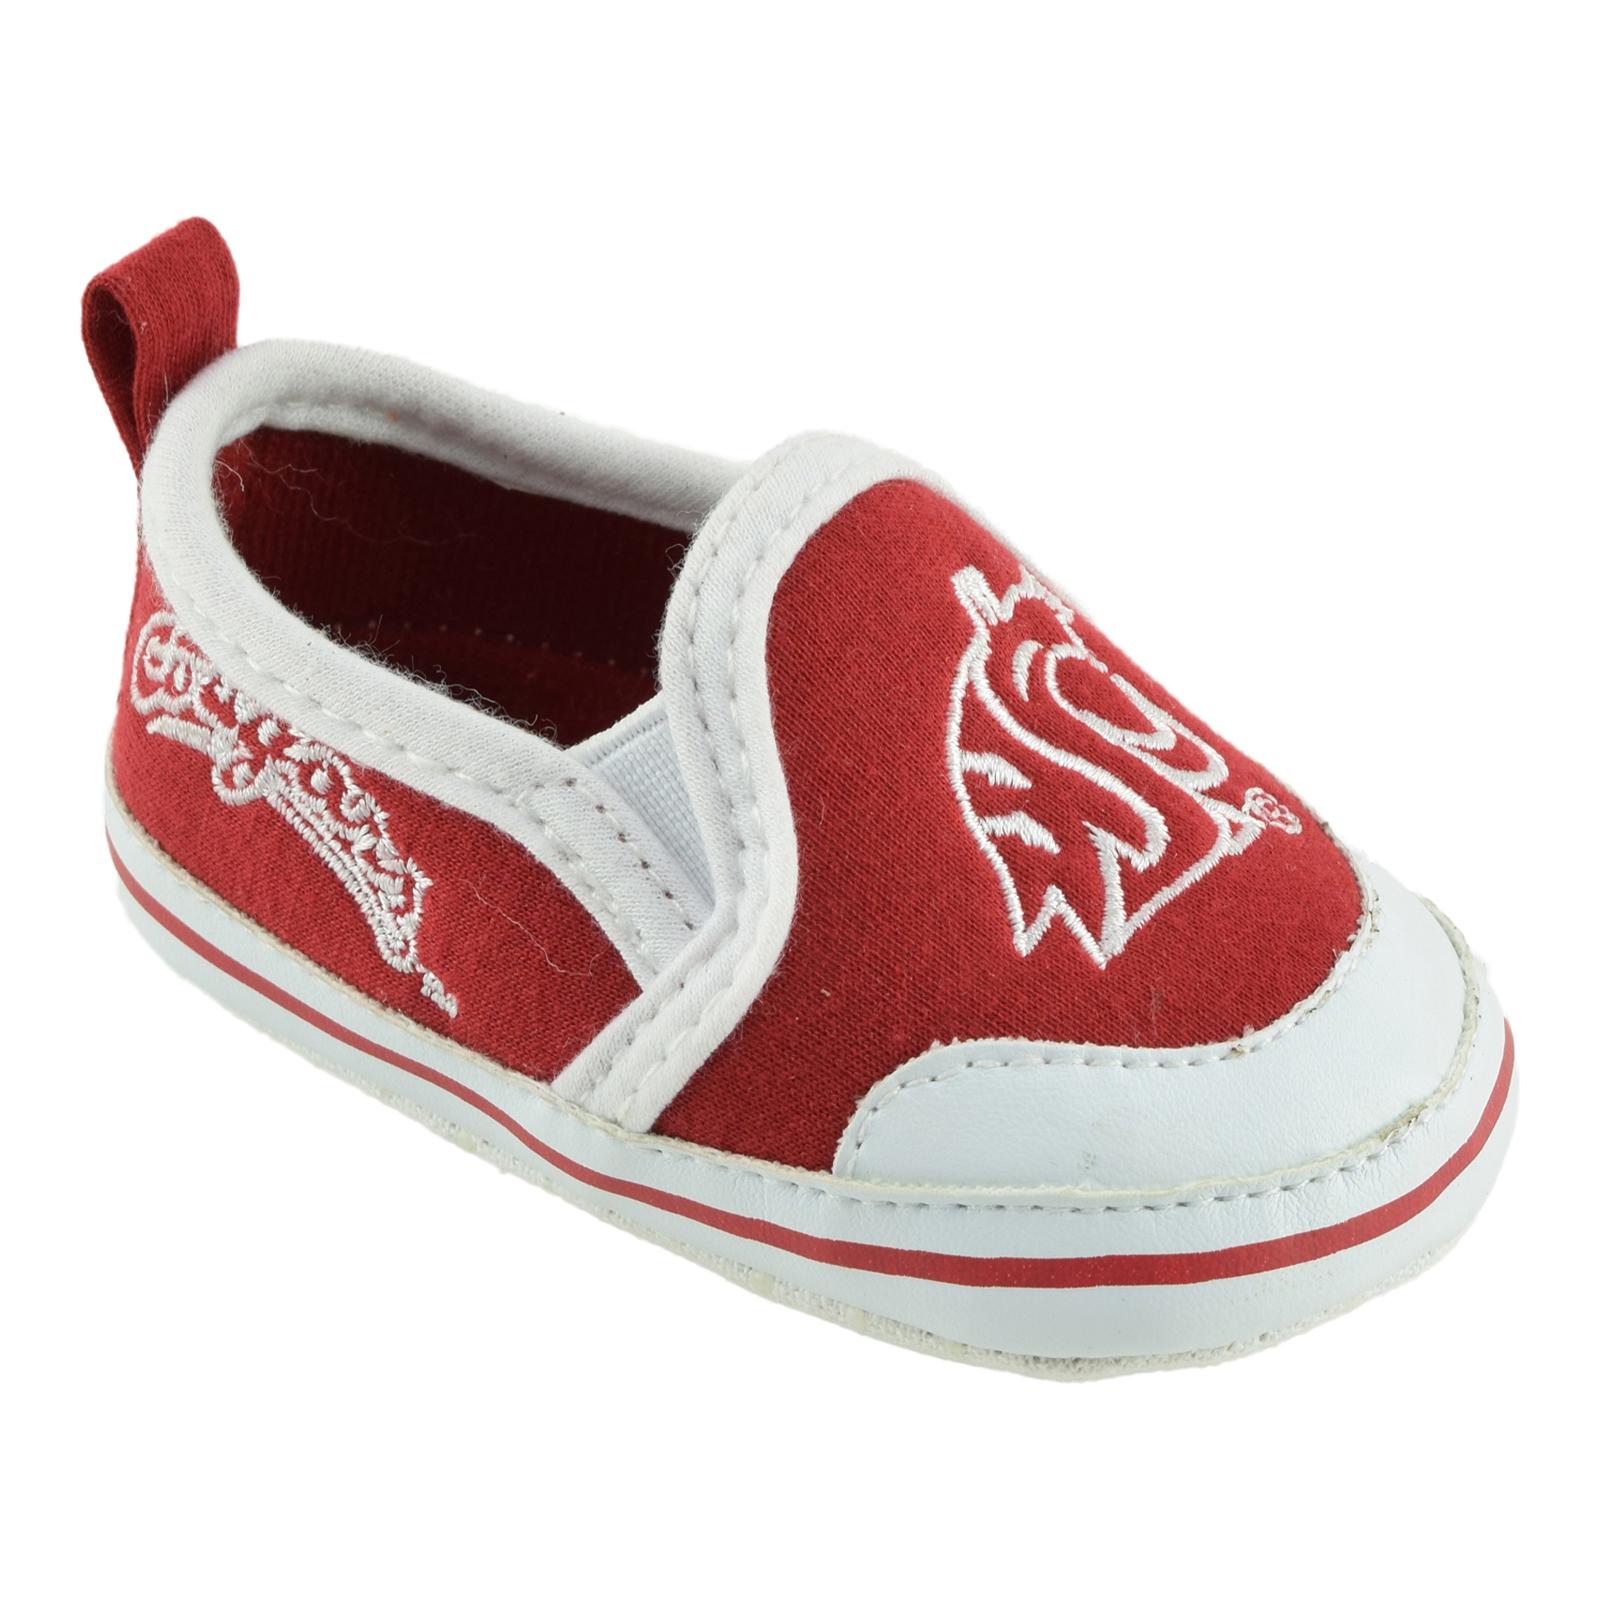 NCAA Newborn & Infant Washington State University Cougars Soft Sole Shoes